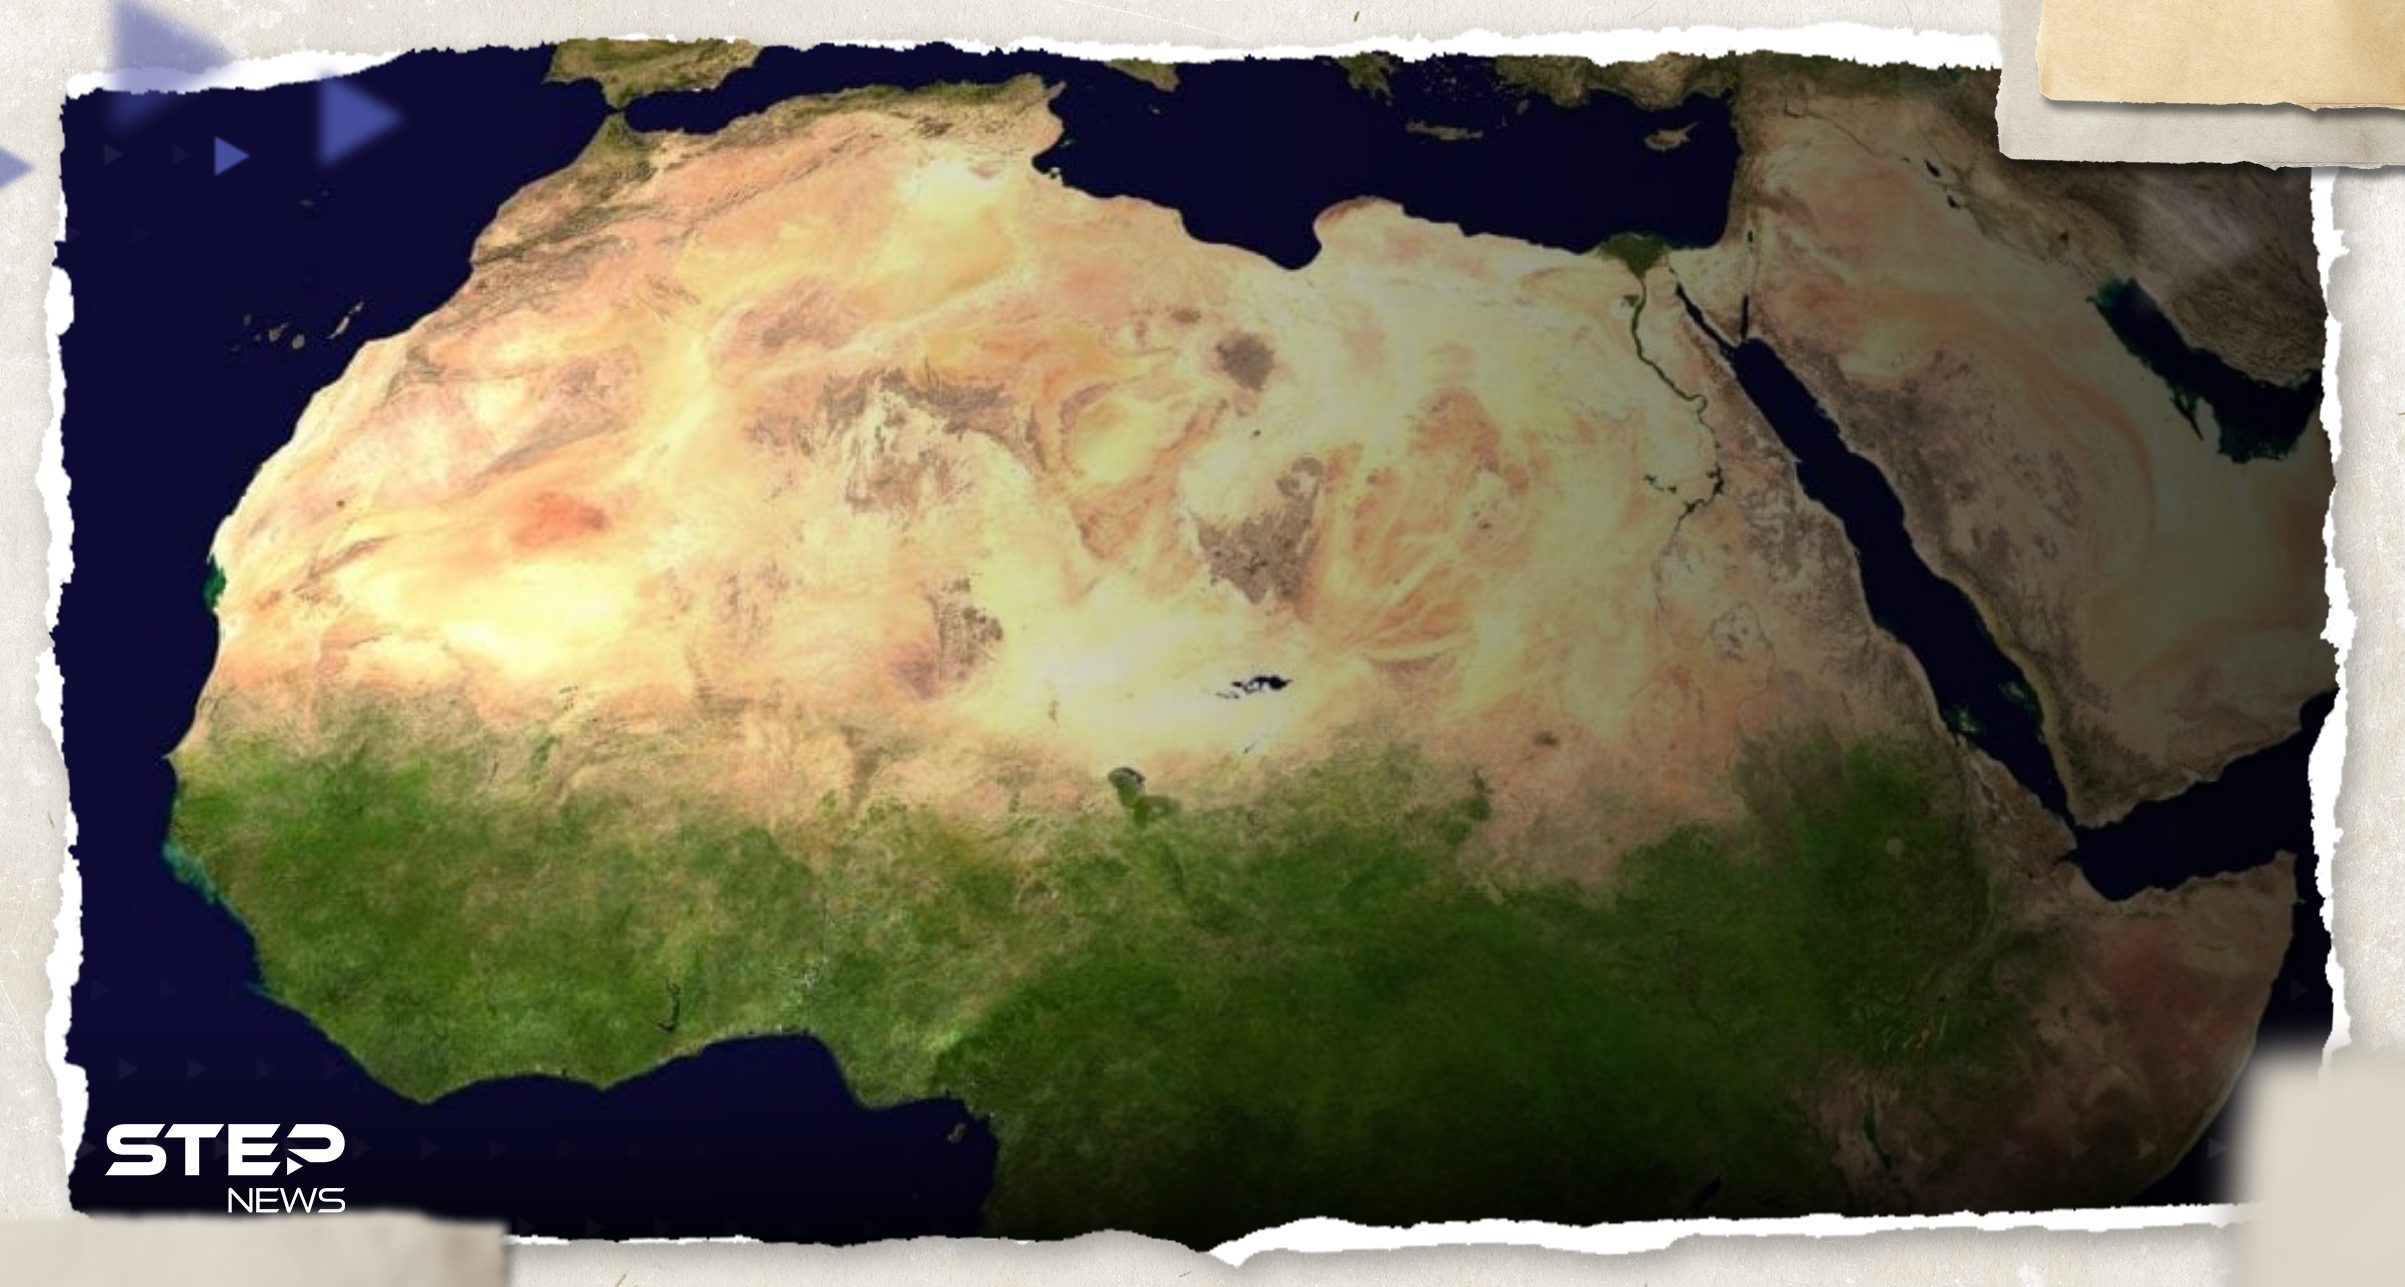 خريطة للوطن العربي في مصر لا تتضمن دولة تثير الجدل والخارجية تتحرك